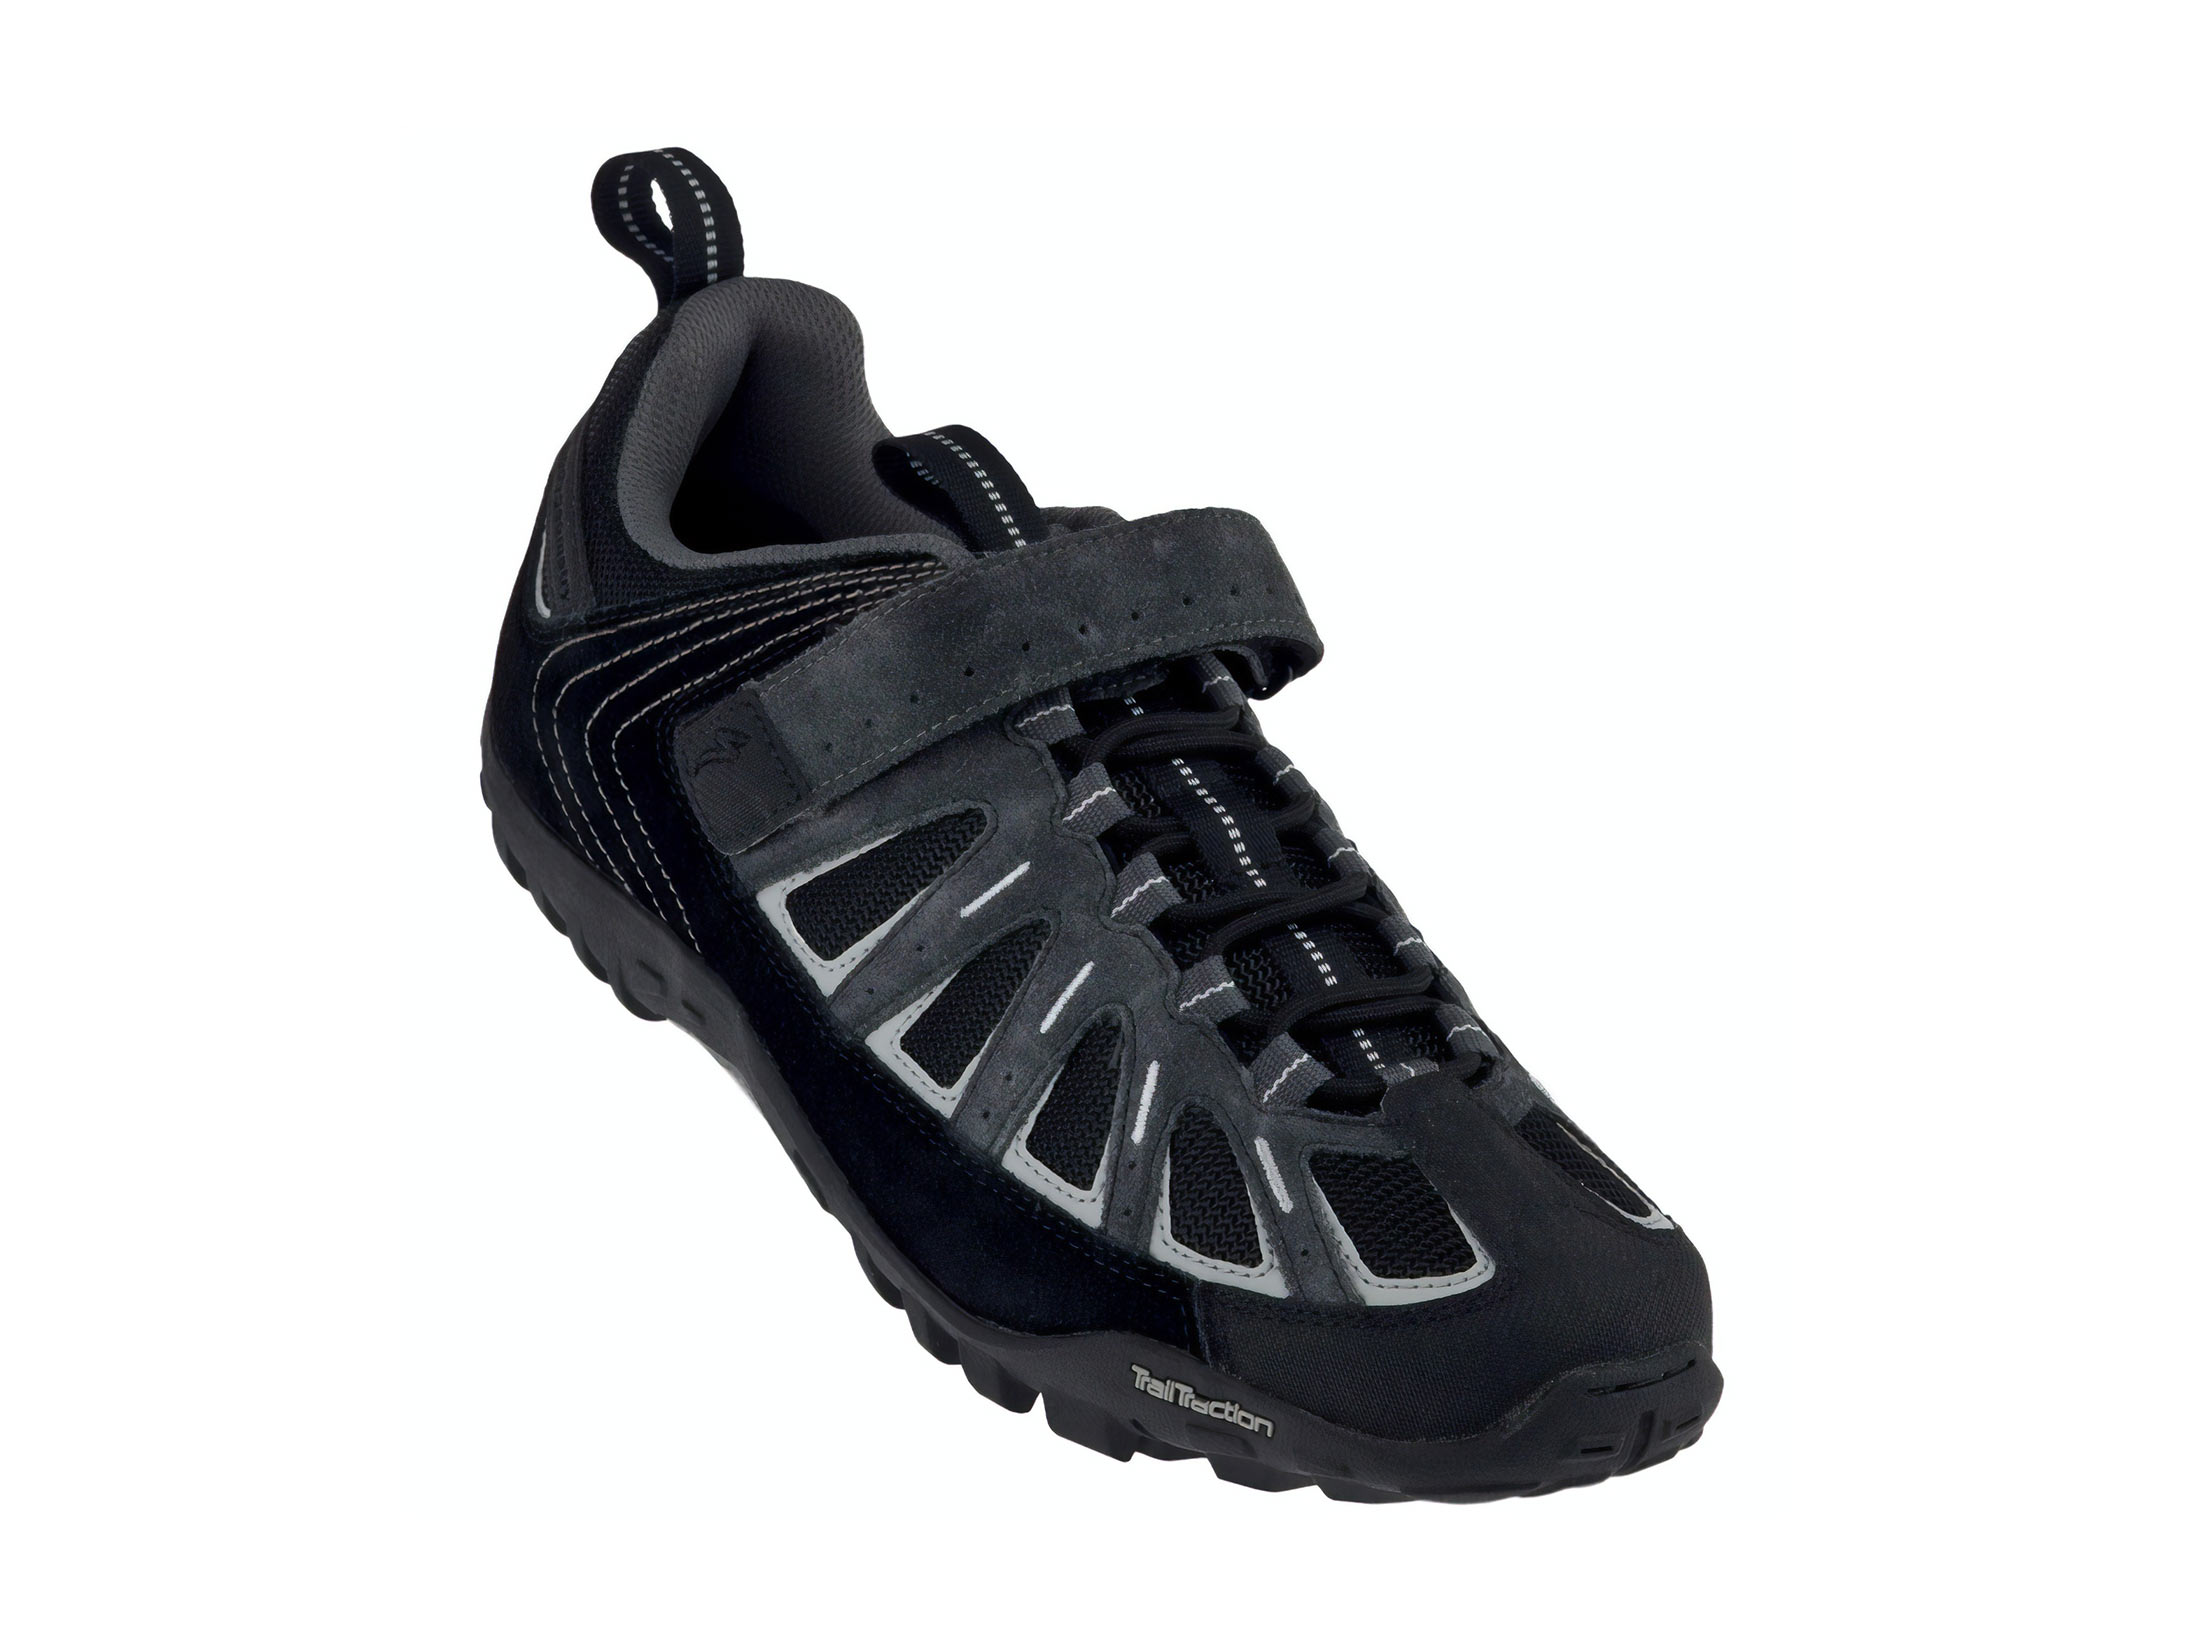 Παπούτσια Specialized Tahoe - Μαύρα